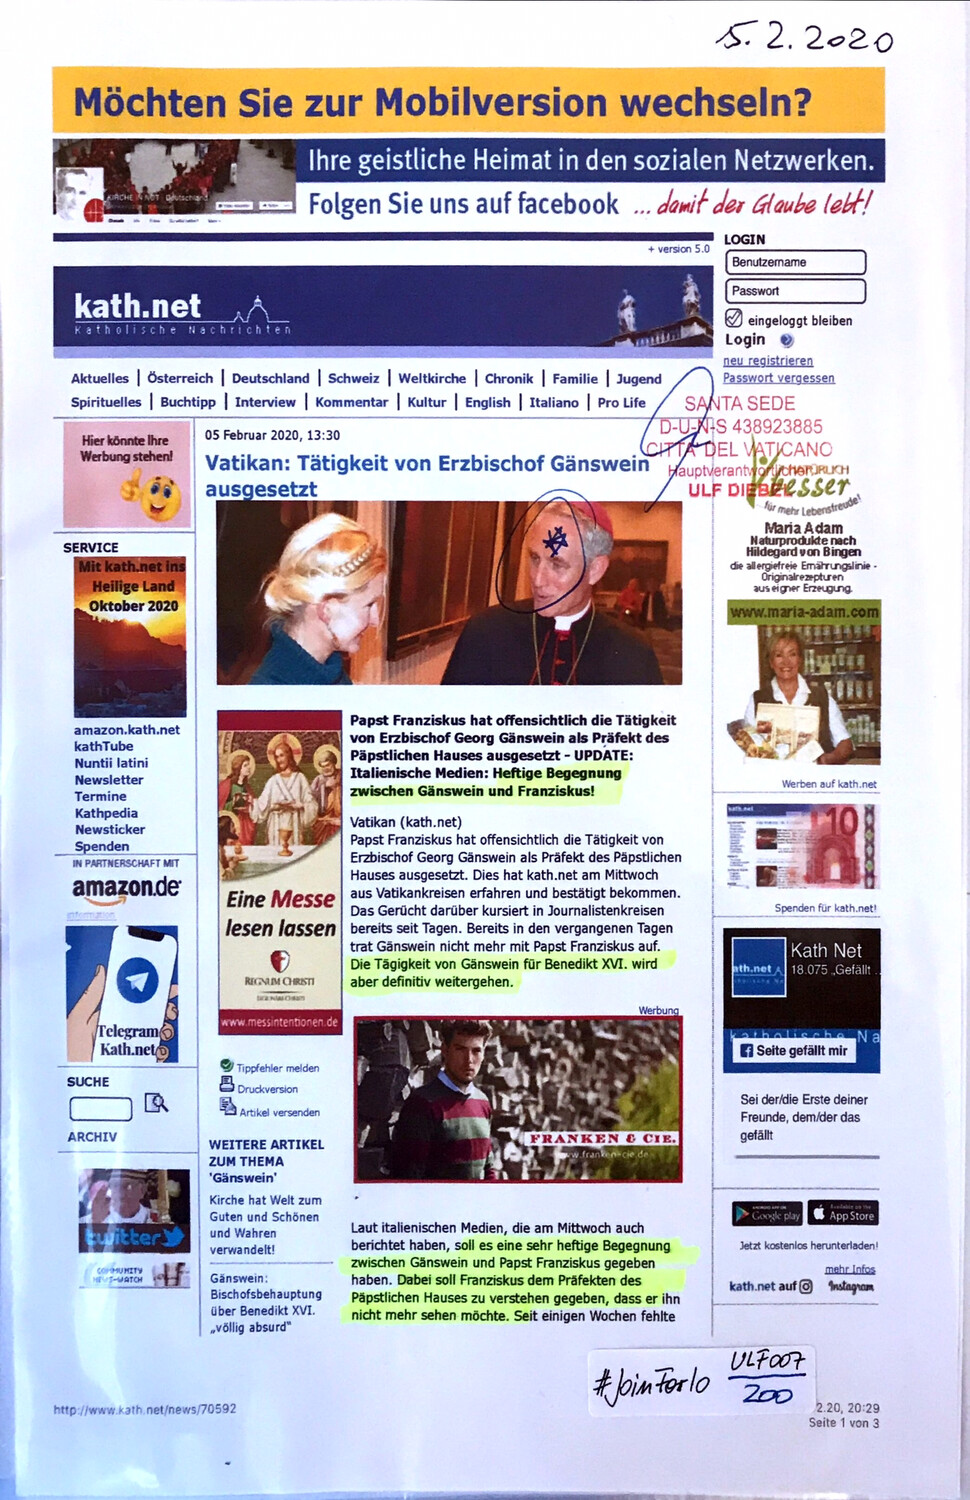 #U007 l kath.net - “Vatikan: Tätigkeit von Erzbischof Gänswein ausgesetzt”